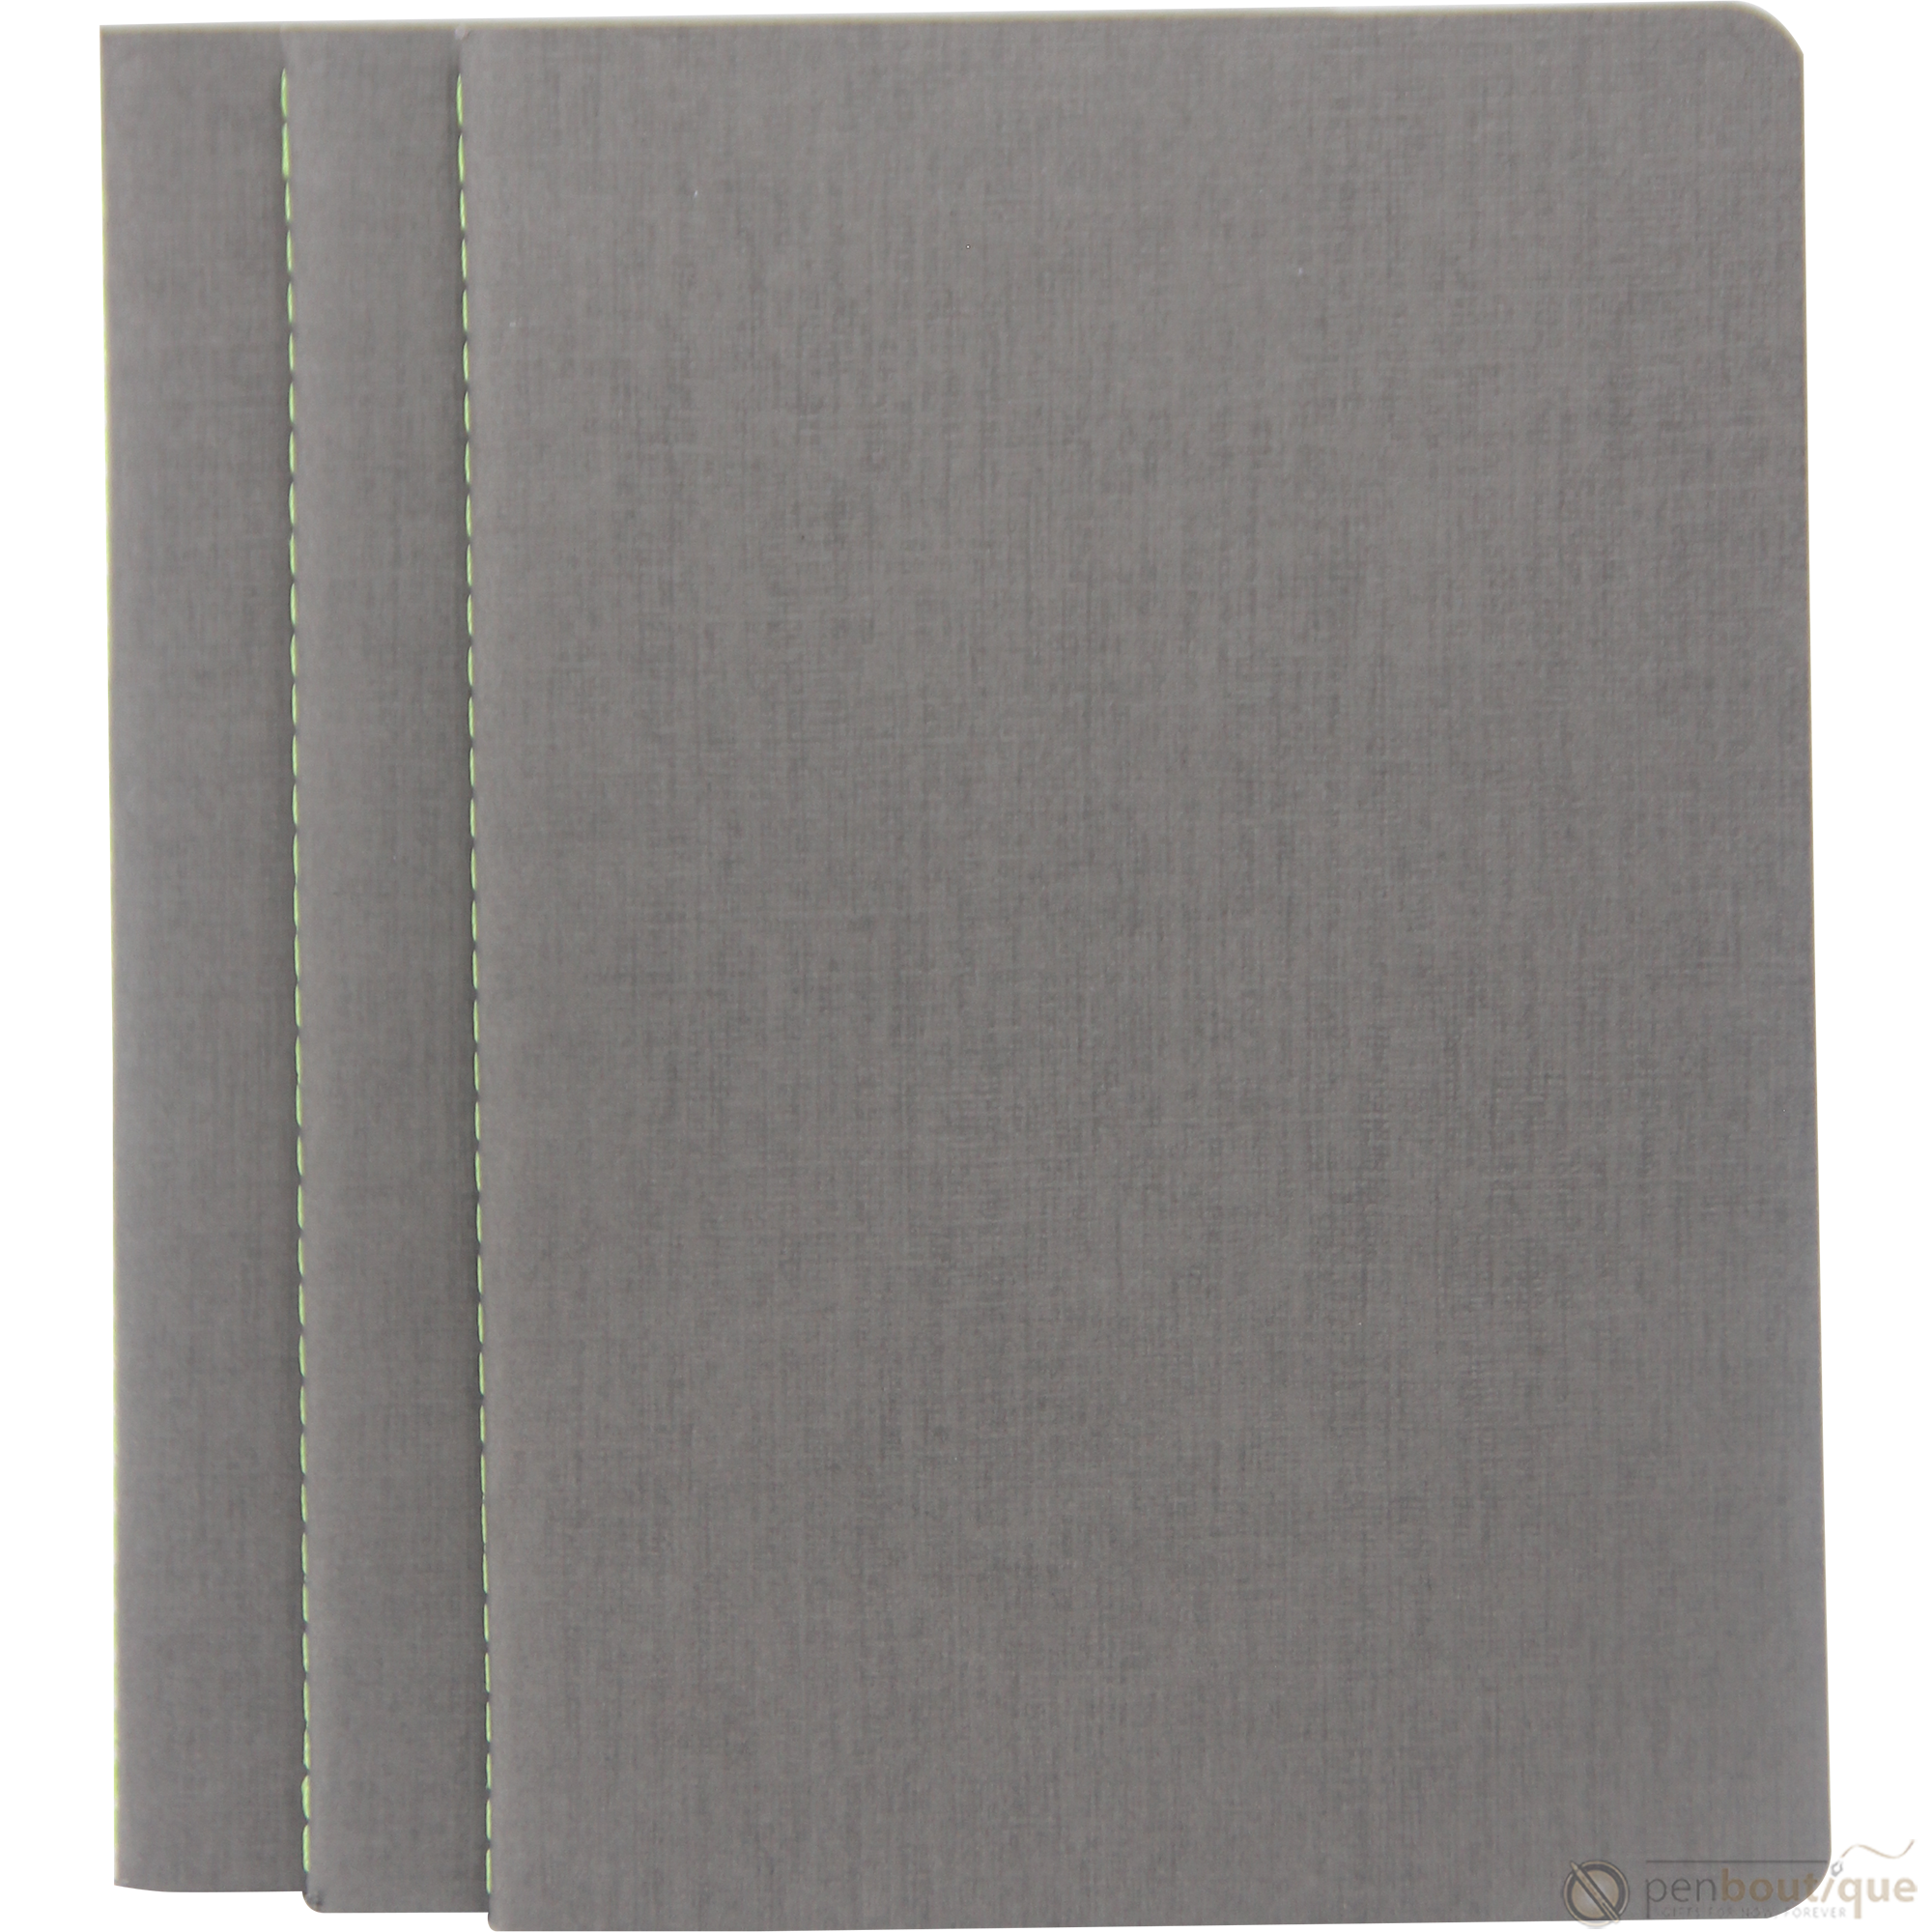 Lamy Booklet - Grey - A5-Pen Boutique Ltd